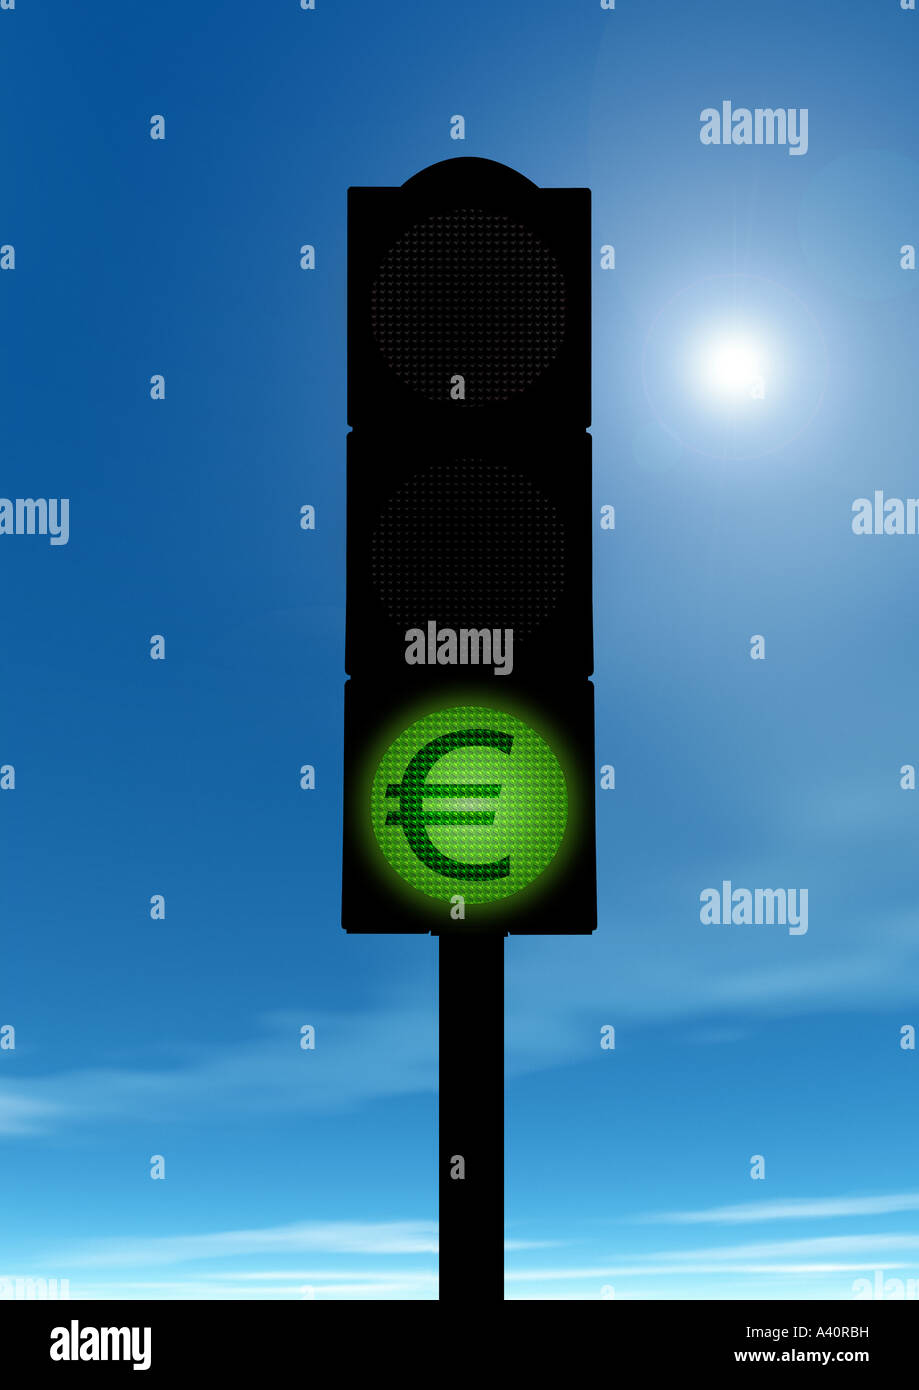 Il semaforo verde con il simbolo dell'Euro grüne Ampel mit Eurozeichen Foto Stock